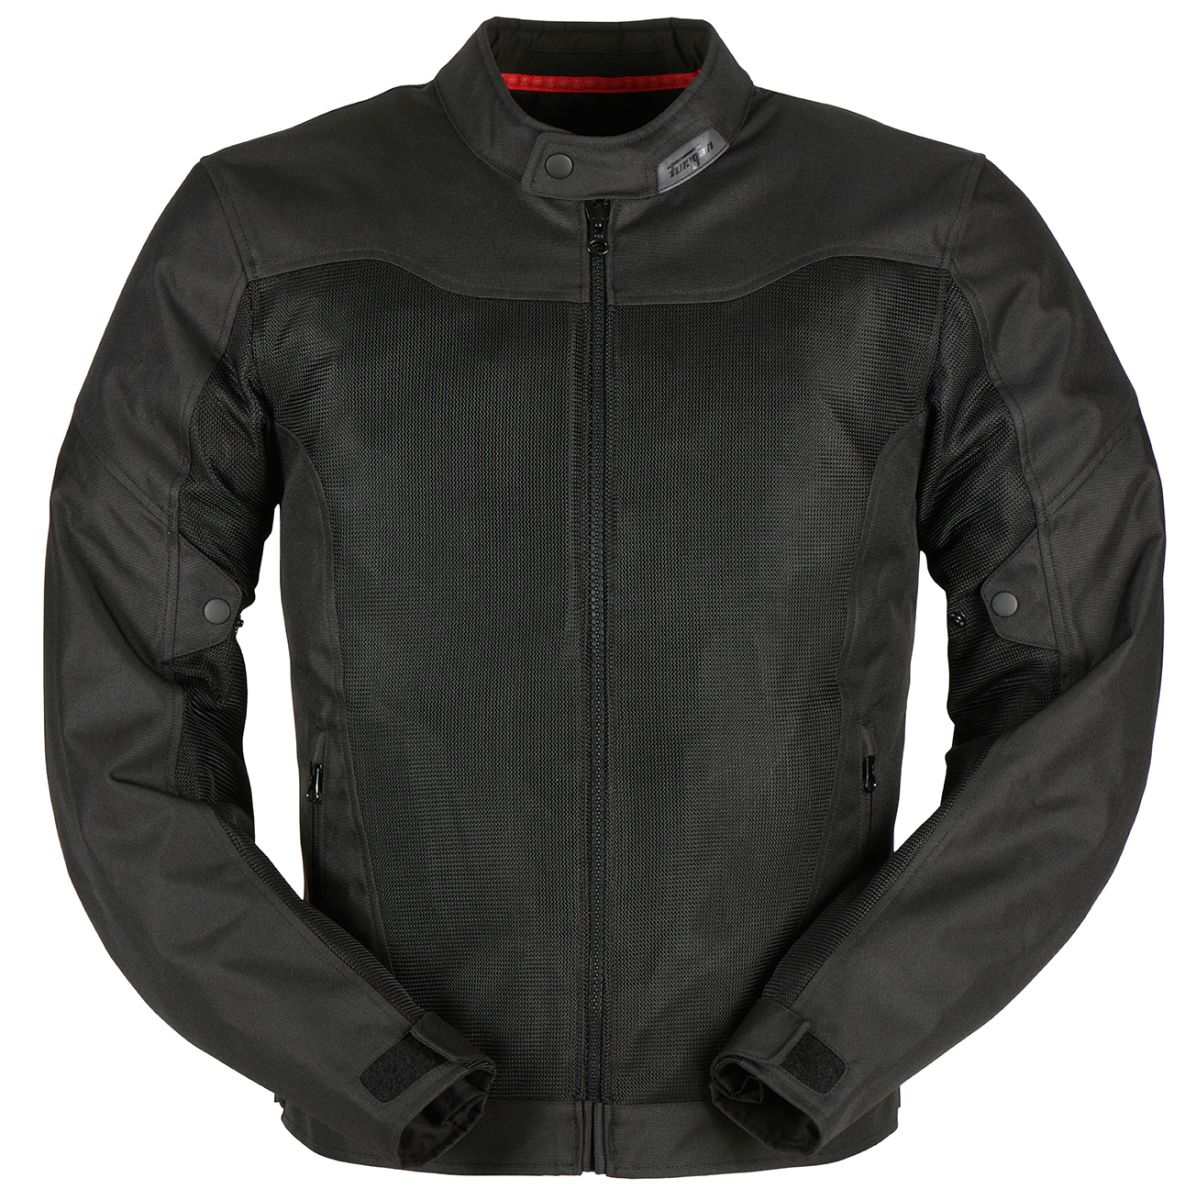 Image of Furygan Mistral 3 Evo Jacket Black Size M EN